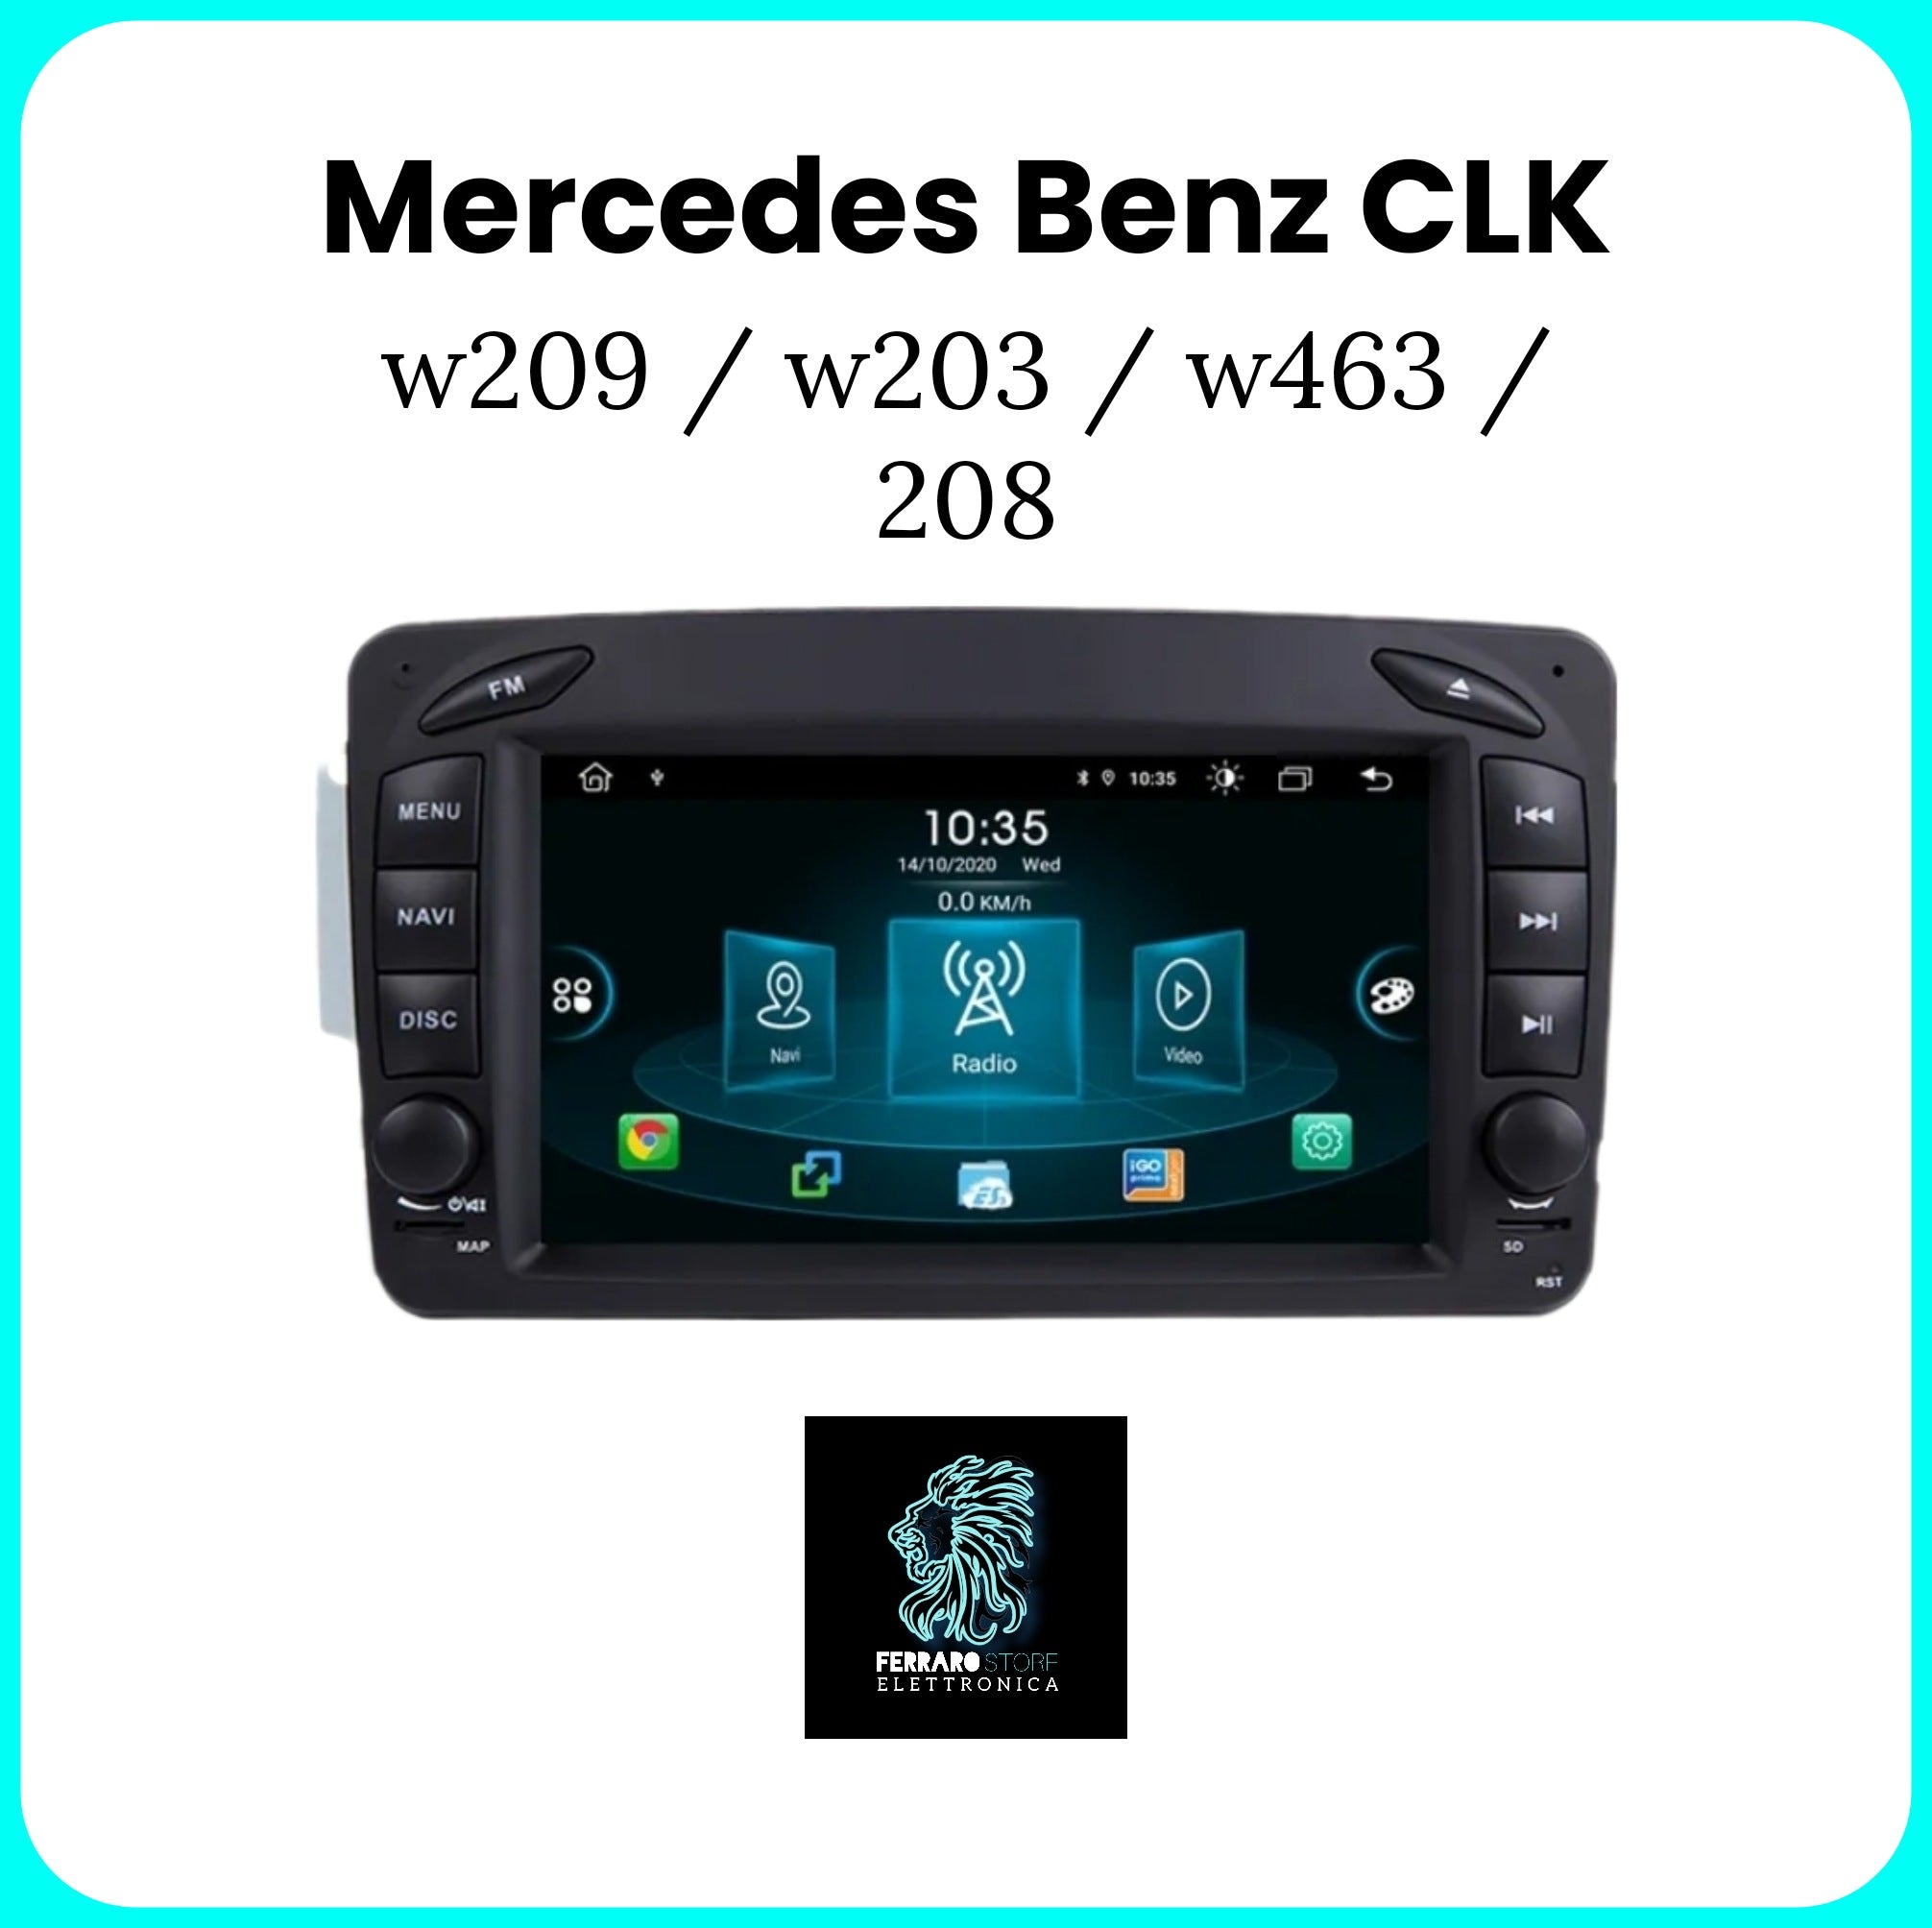 Autoradio per MERCEDES BENZ CLK / W209 / W203 / W463 / W208 [2009 - 2016] - Radio RDS, Sistema auto Intelligente, 2Din 7"Pollici, GPS, Navigatore, Wifi